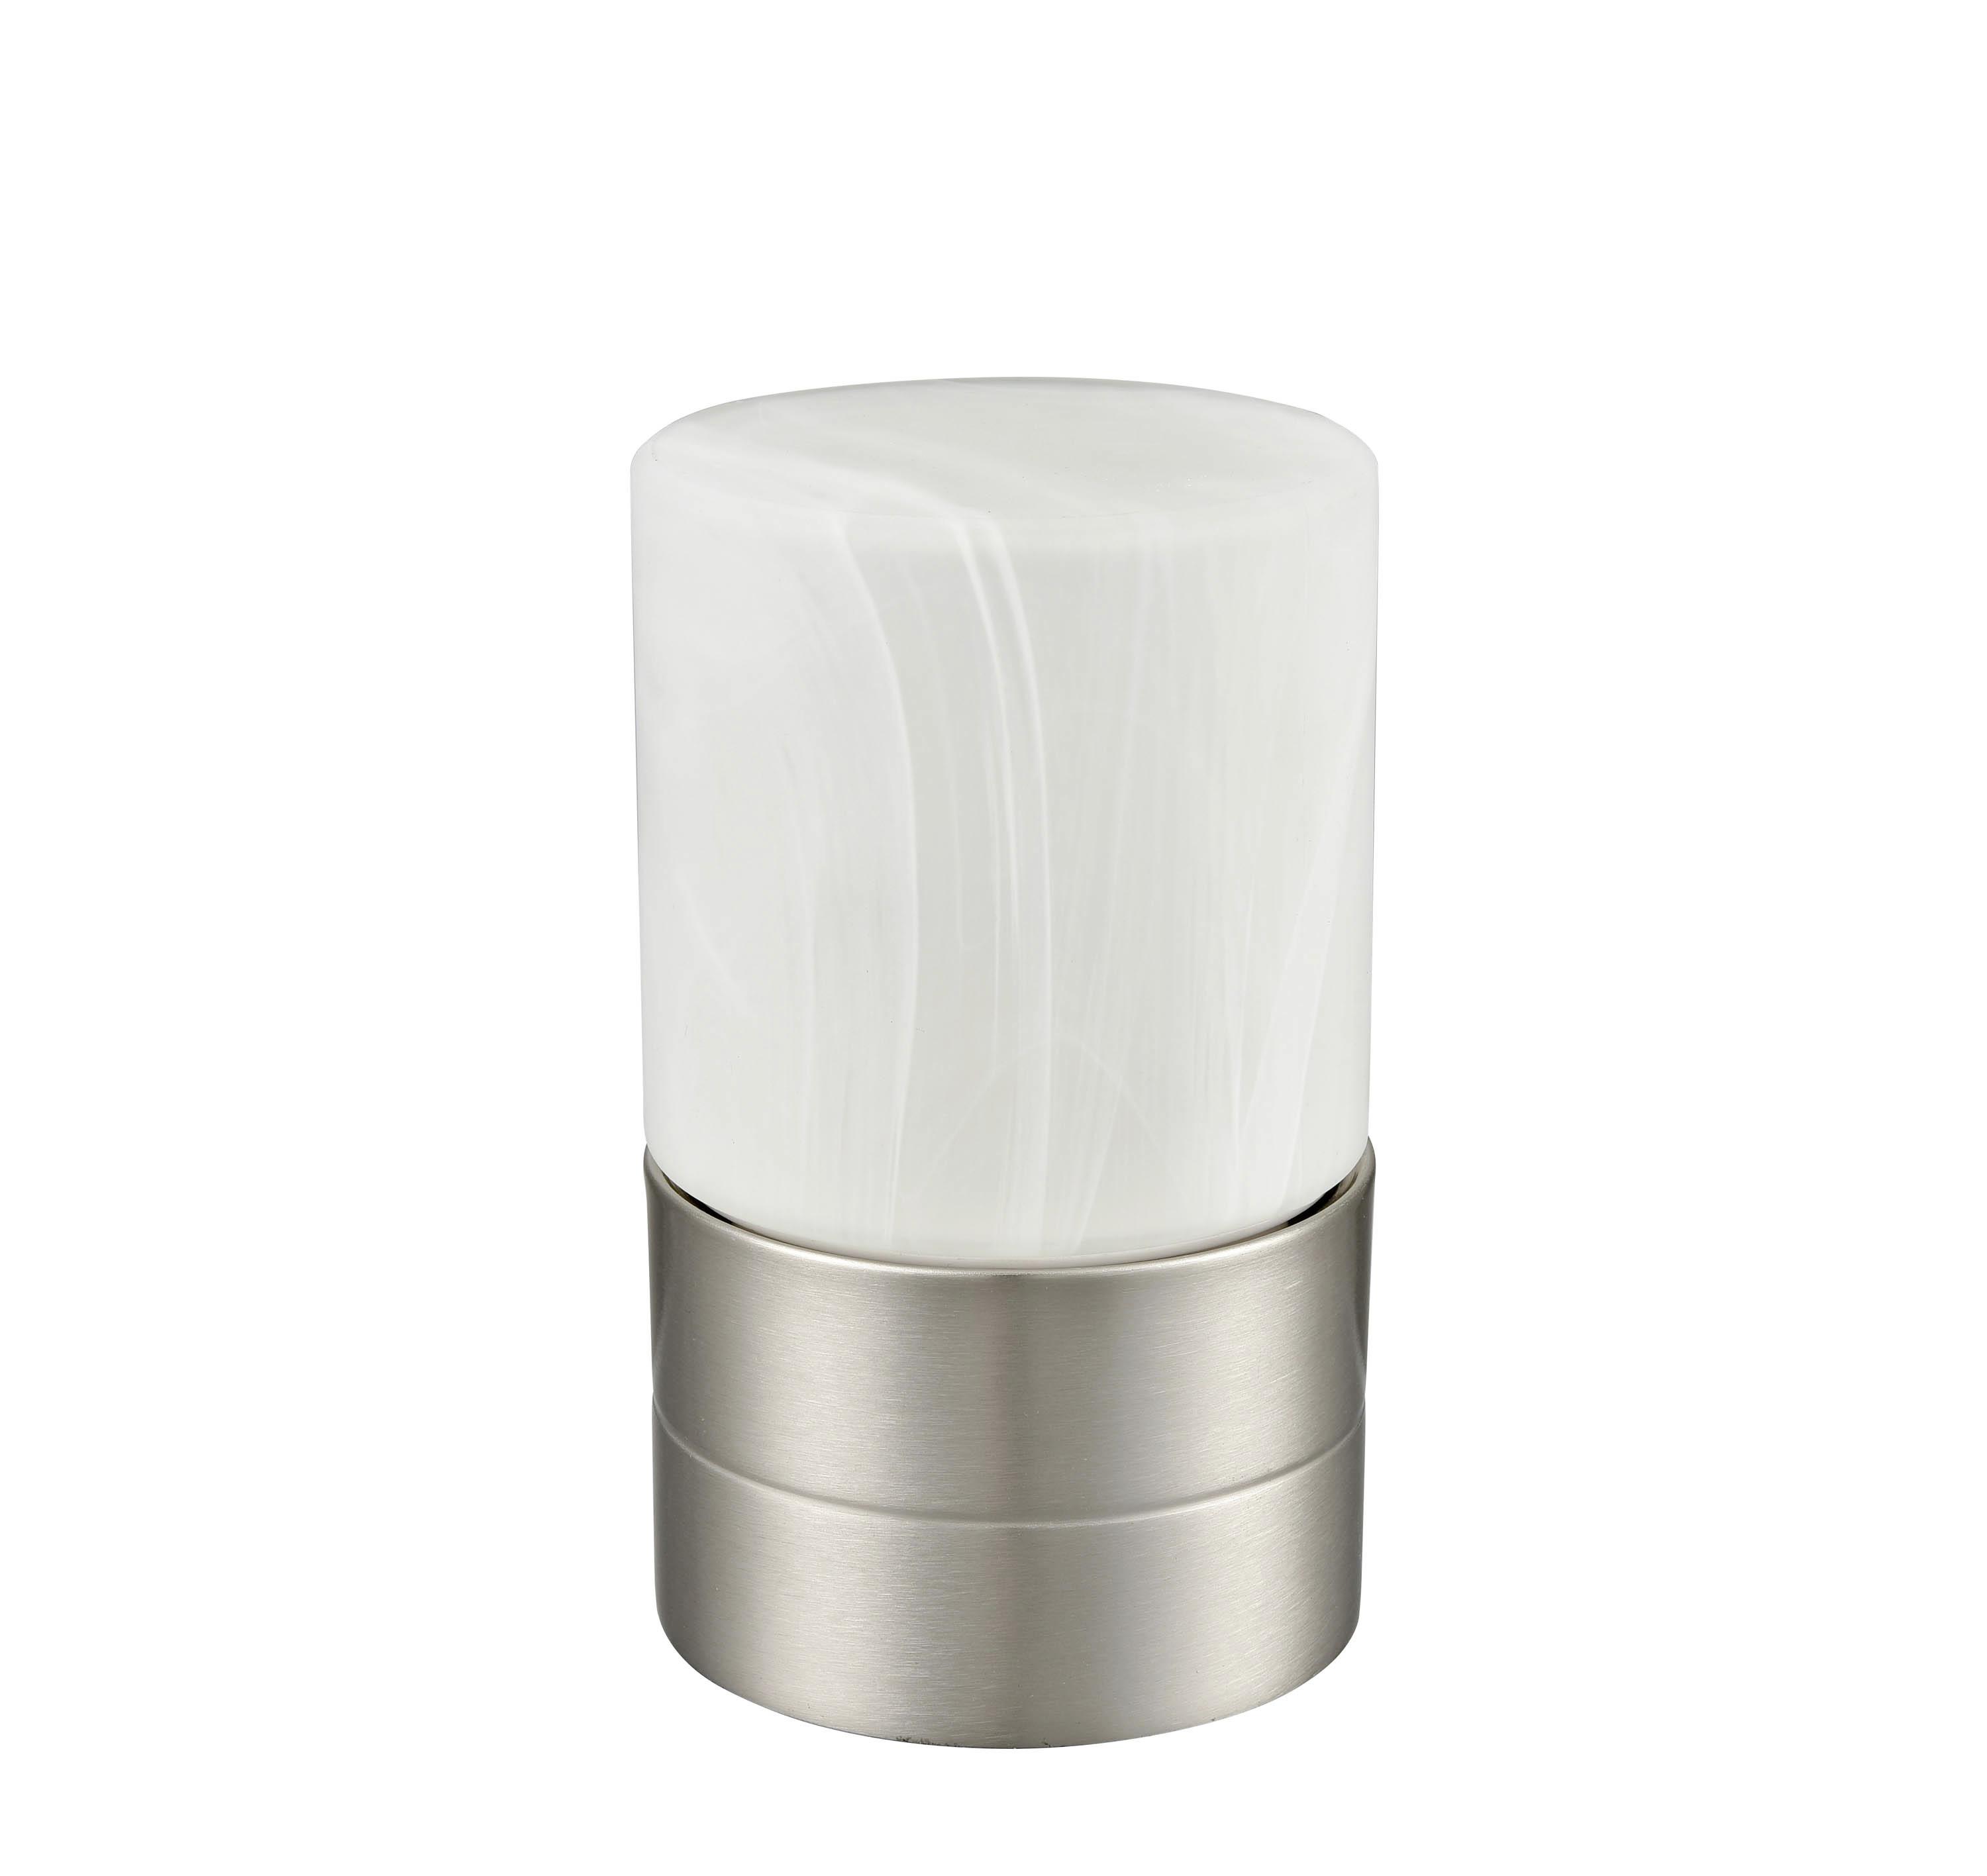 Tischlampe Eva Nickelfarben/ Weiß mit Touch-Funktion - Weiß/Nickelfarben, ROMANTIK / LANDHAUS, Glas/Metall (9/15cm) - James Wood